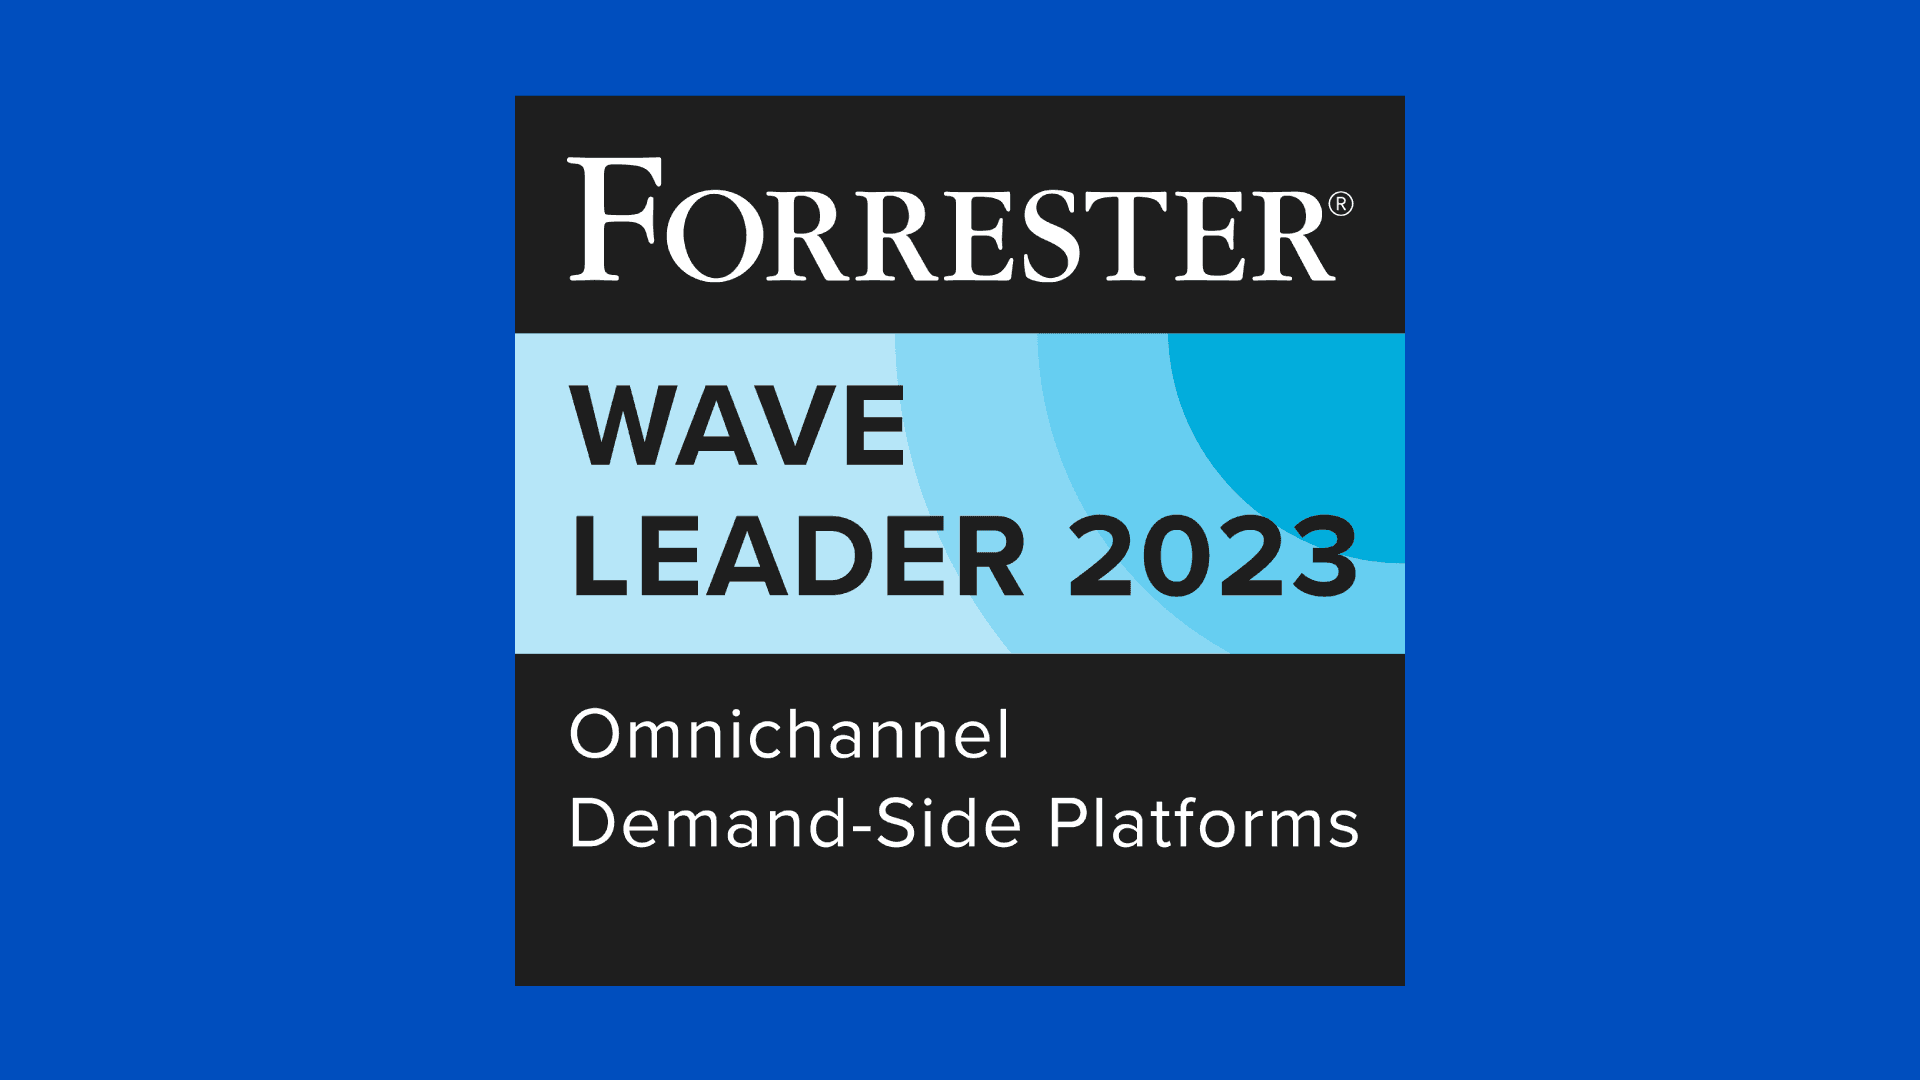 Forrester - Wave Leader 2023 - Omnichannel Demand-Side Platforms